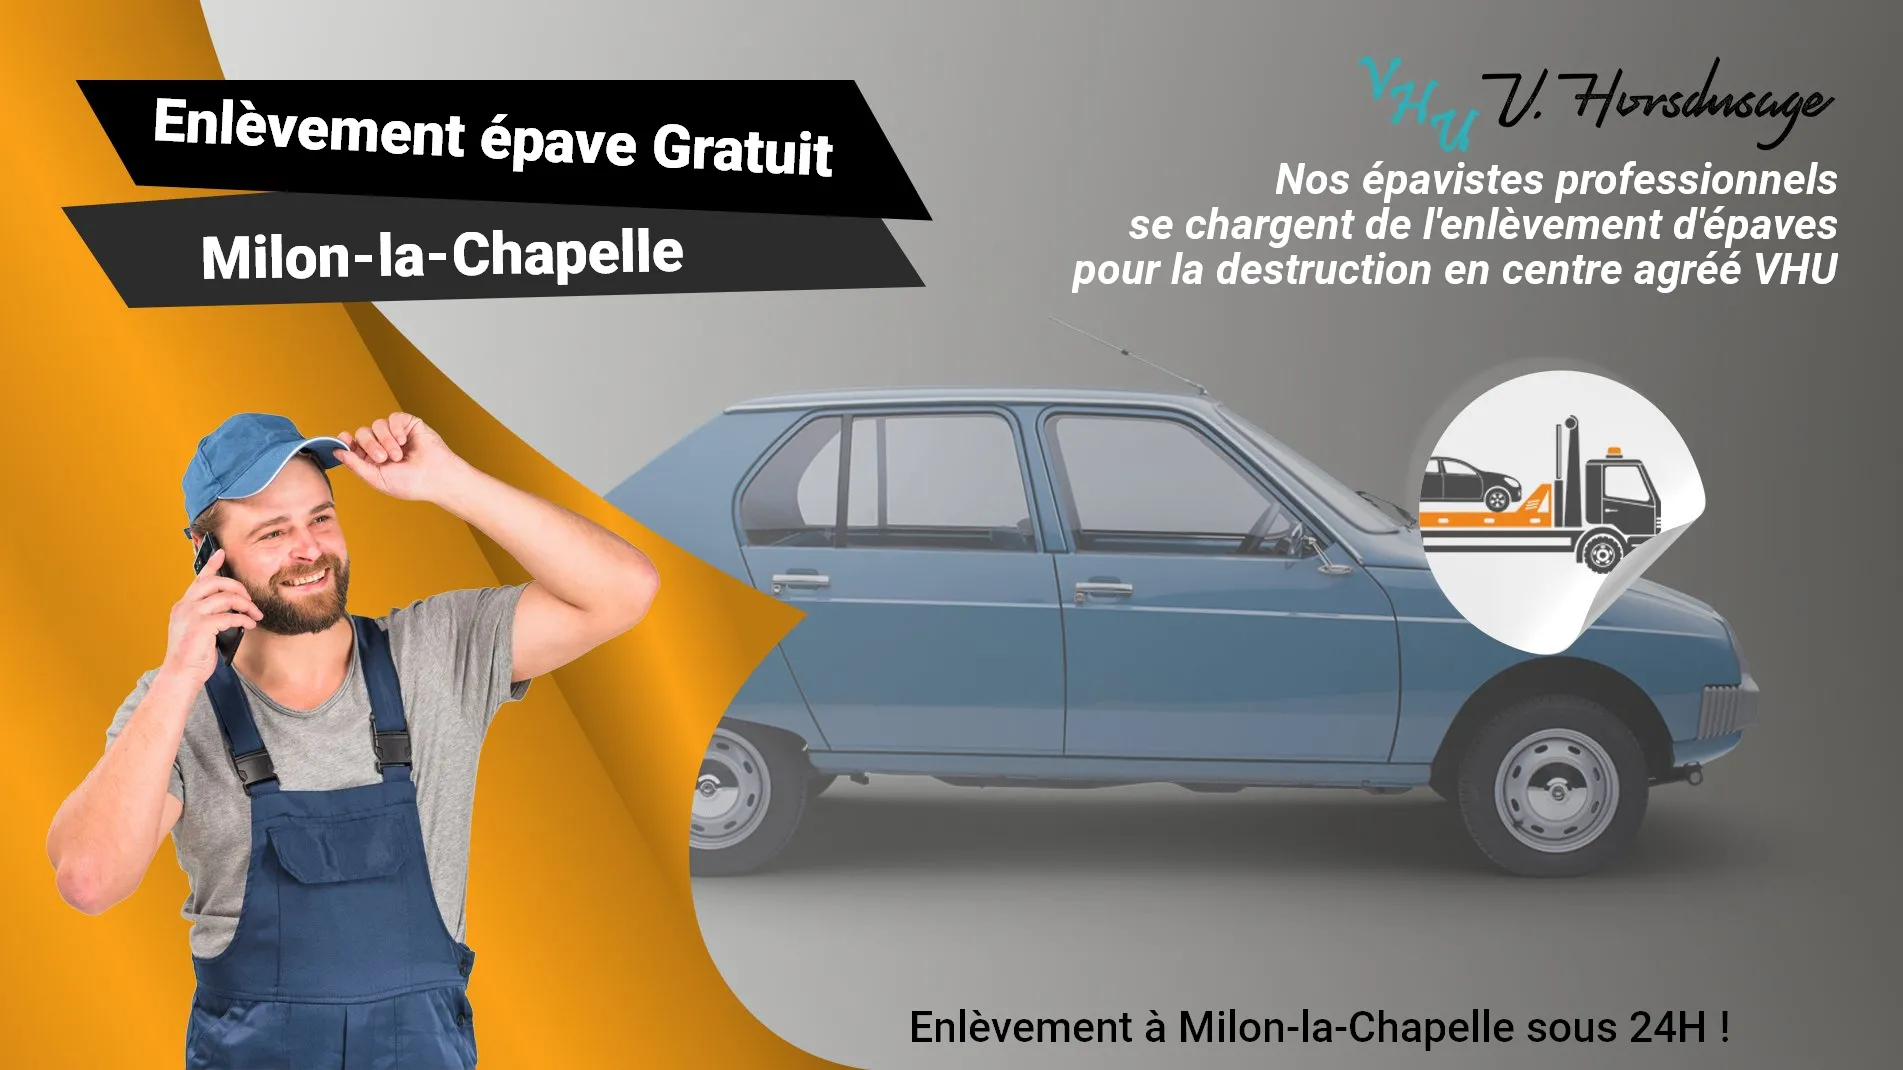 Pour un enlèvement gratuit à Milon-la-Chapelle, contactez nos épavistes agréé VHU